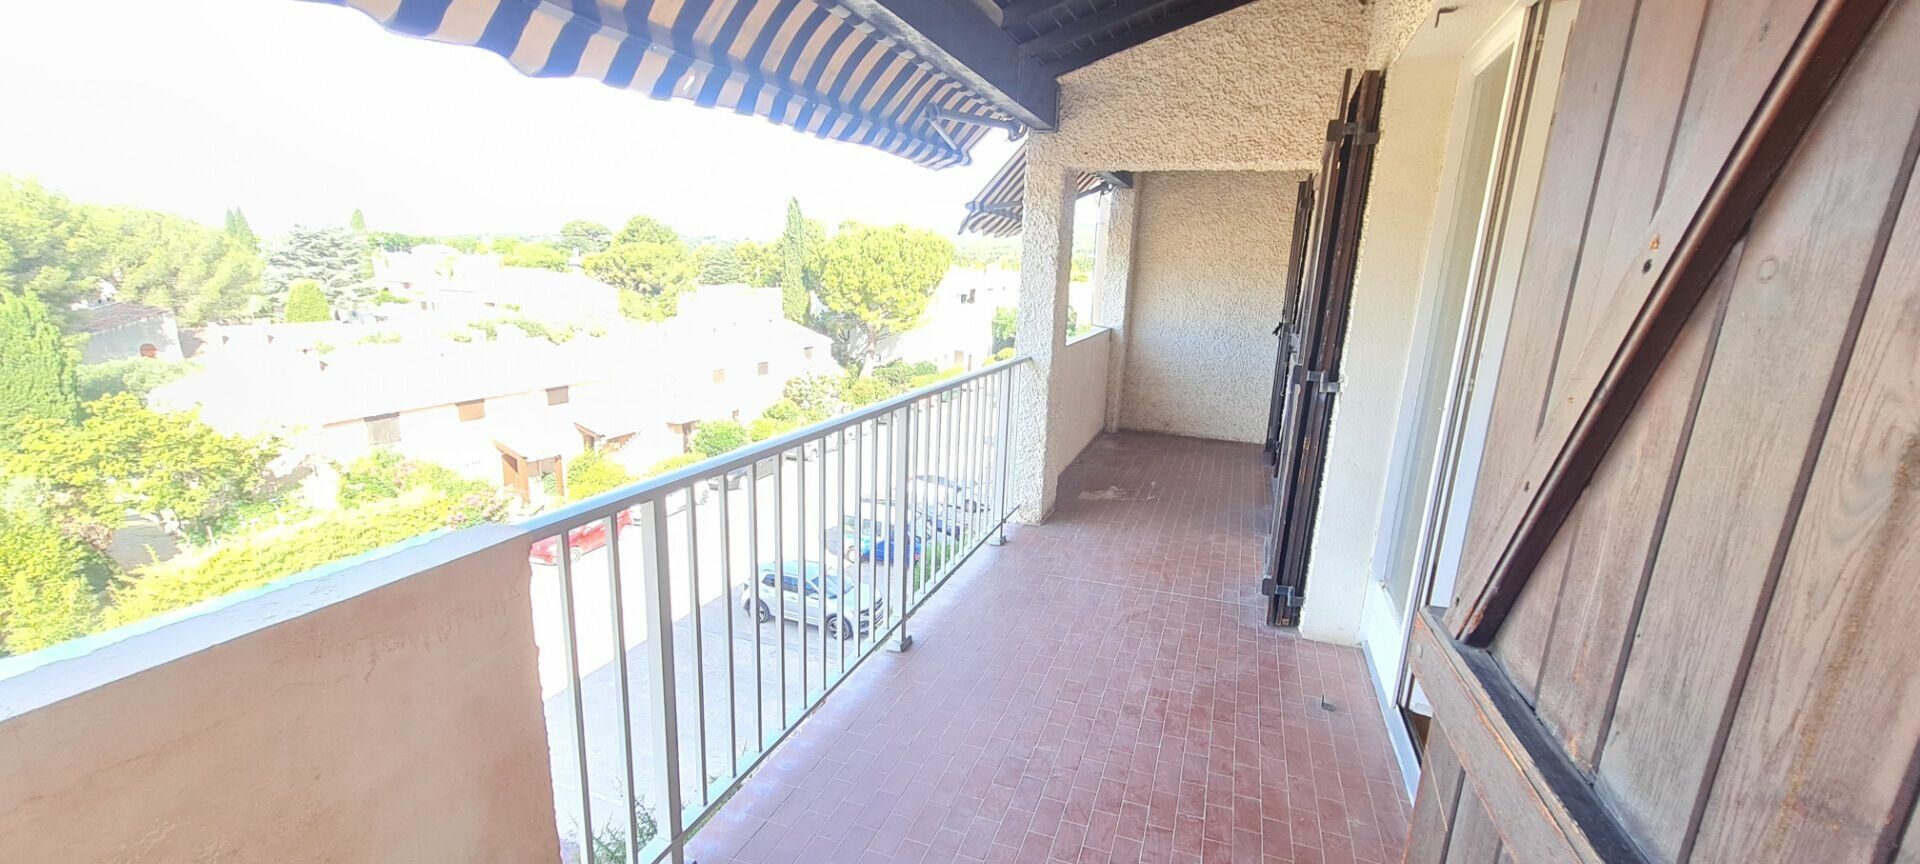 Appartement à vendre 2 58m2 à Saint-Cyr-sur-Mer vignette-2